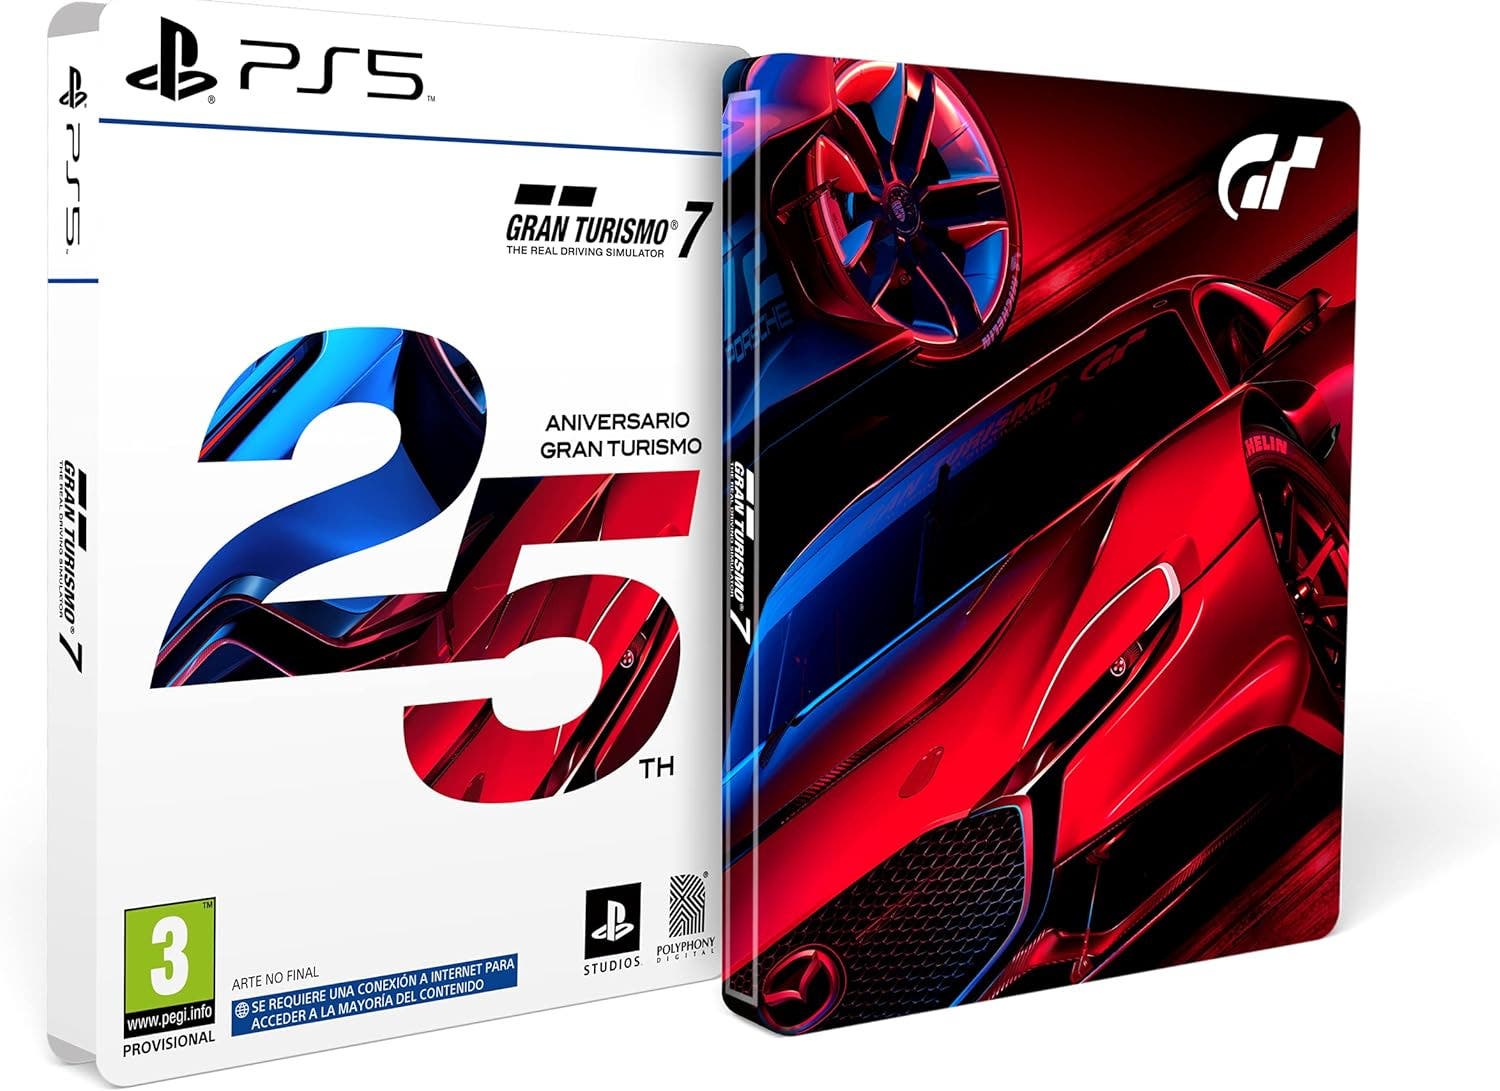 Análisis Gran Turismo 7, el simulador de conducción real para PS5 y PS4